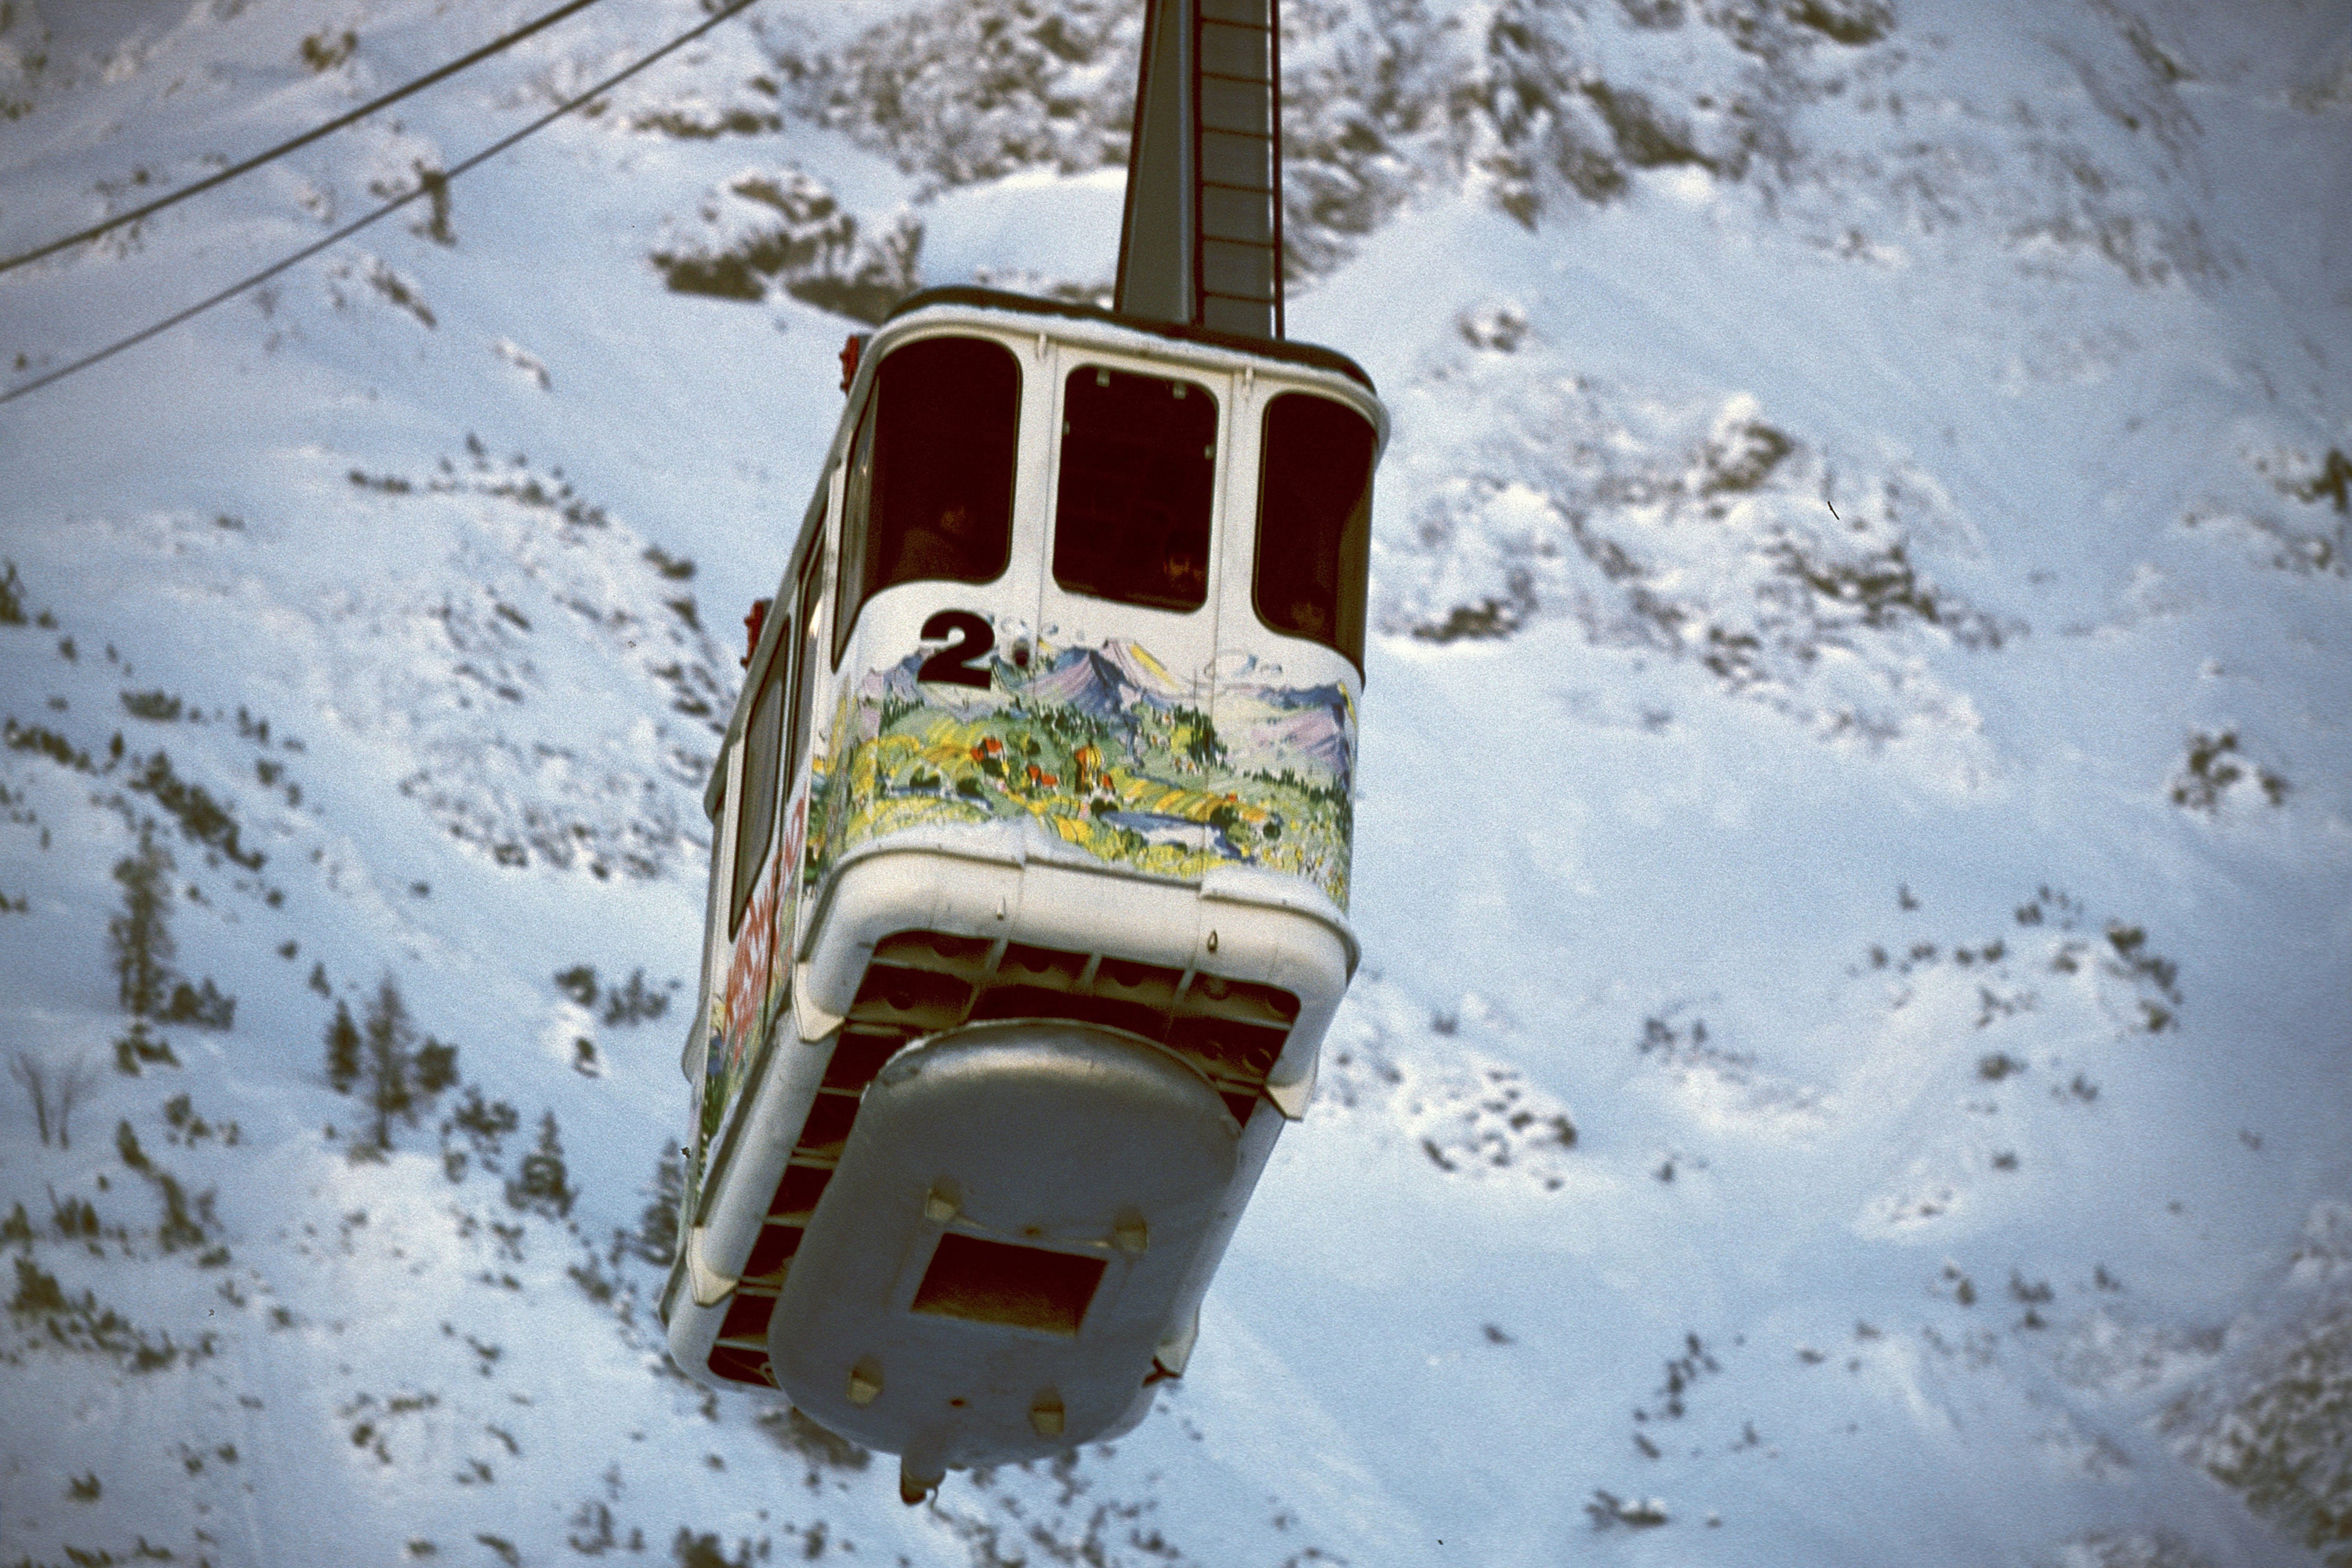 Karwendel cable car (00008107)